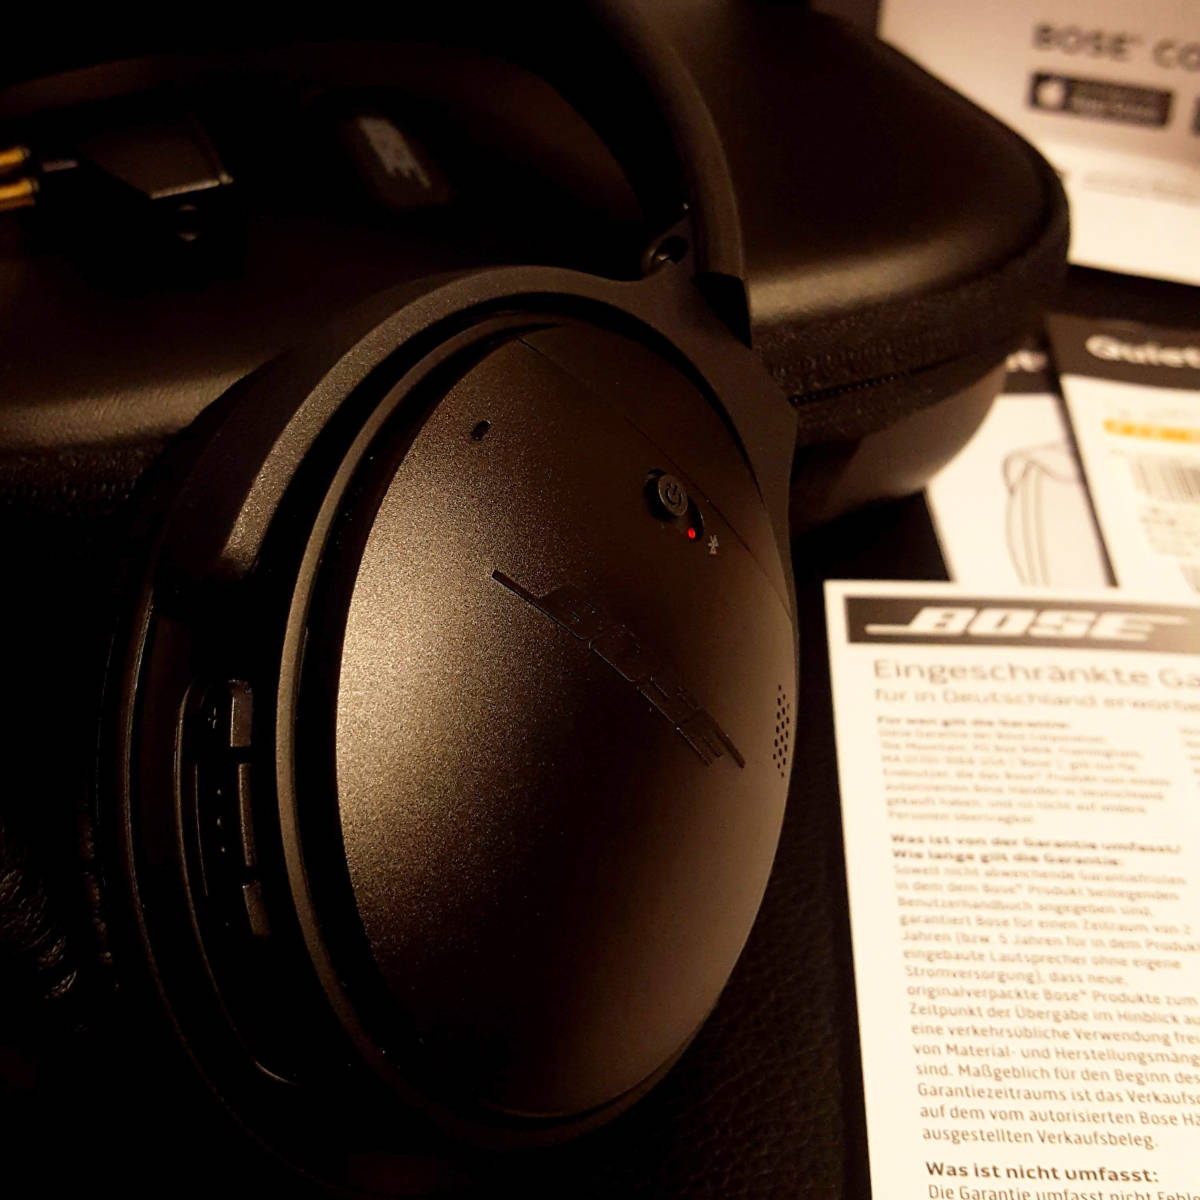  原文:【ほぼ新品】 Bose QuietComfort 35 wireless headphones ワイヤレスノイズキャンセリングヘッドホン ブラック